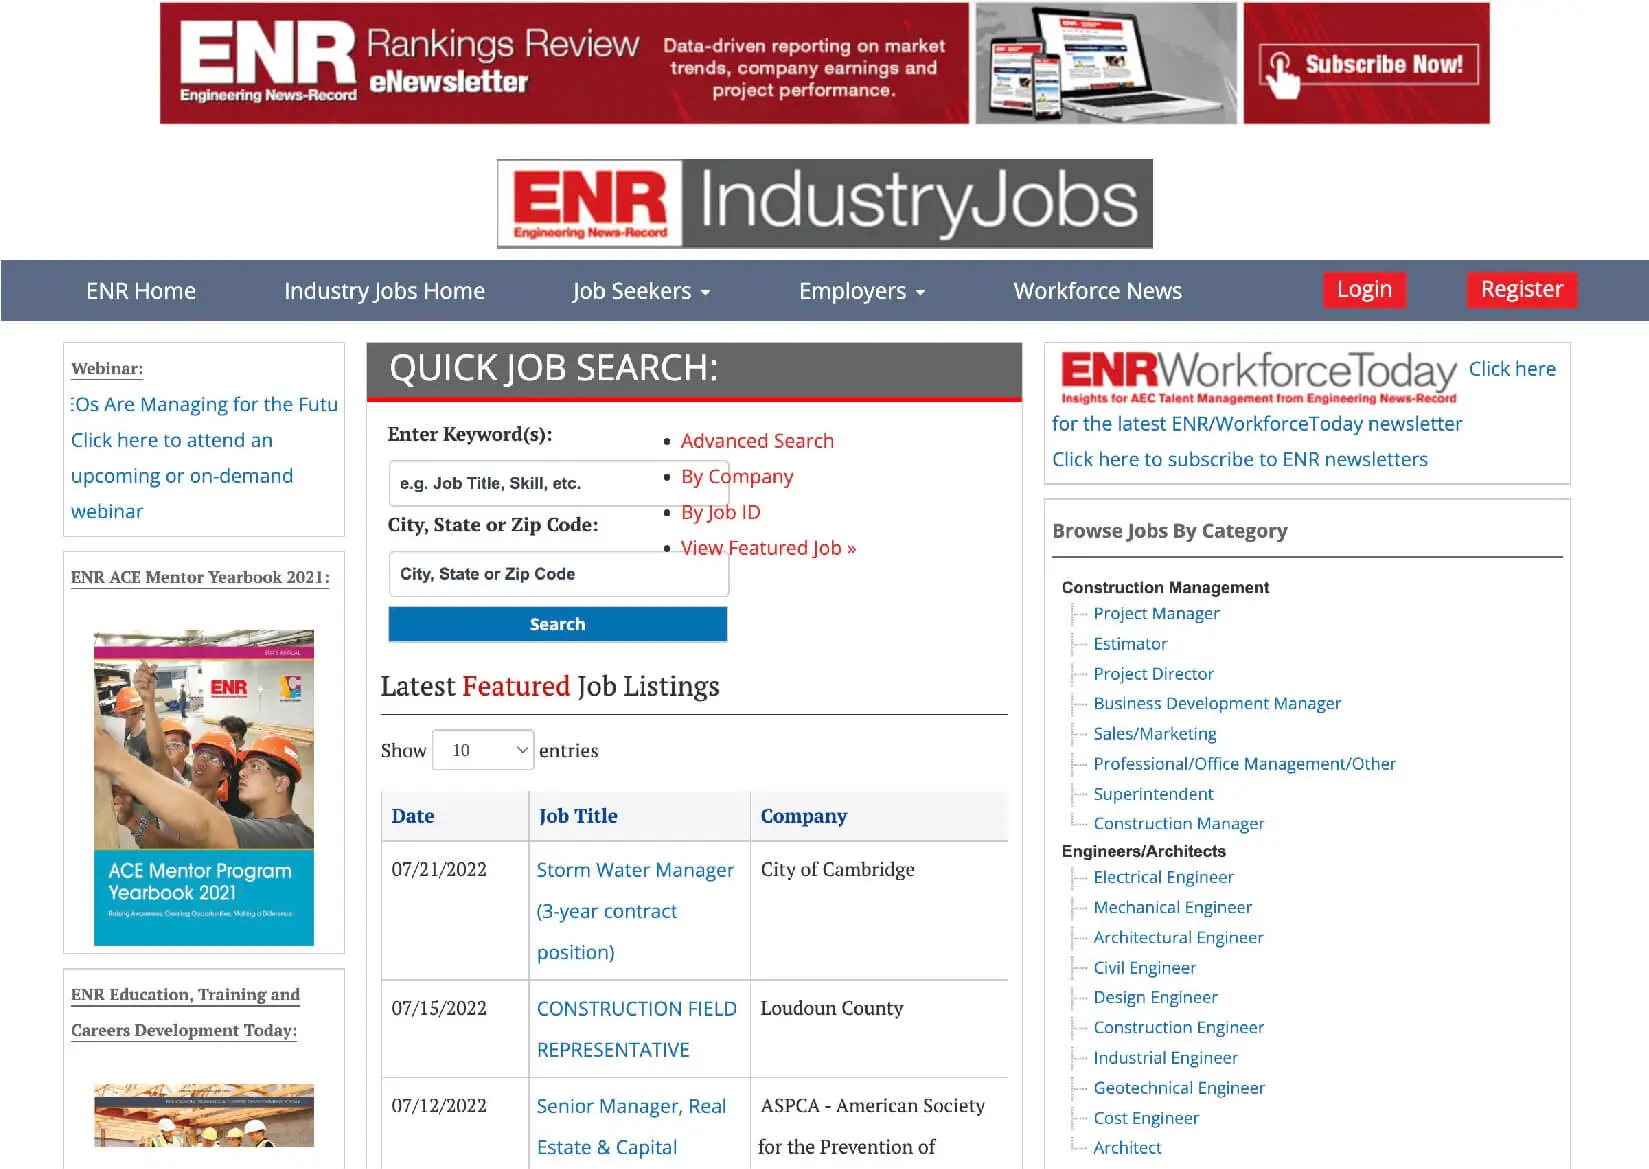 ENR Industry Jobs